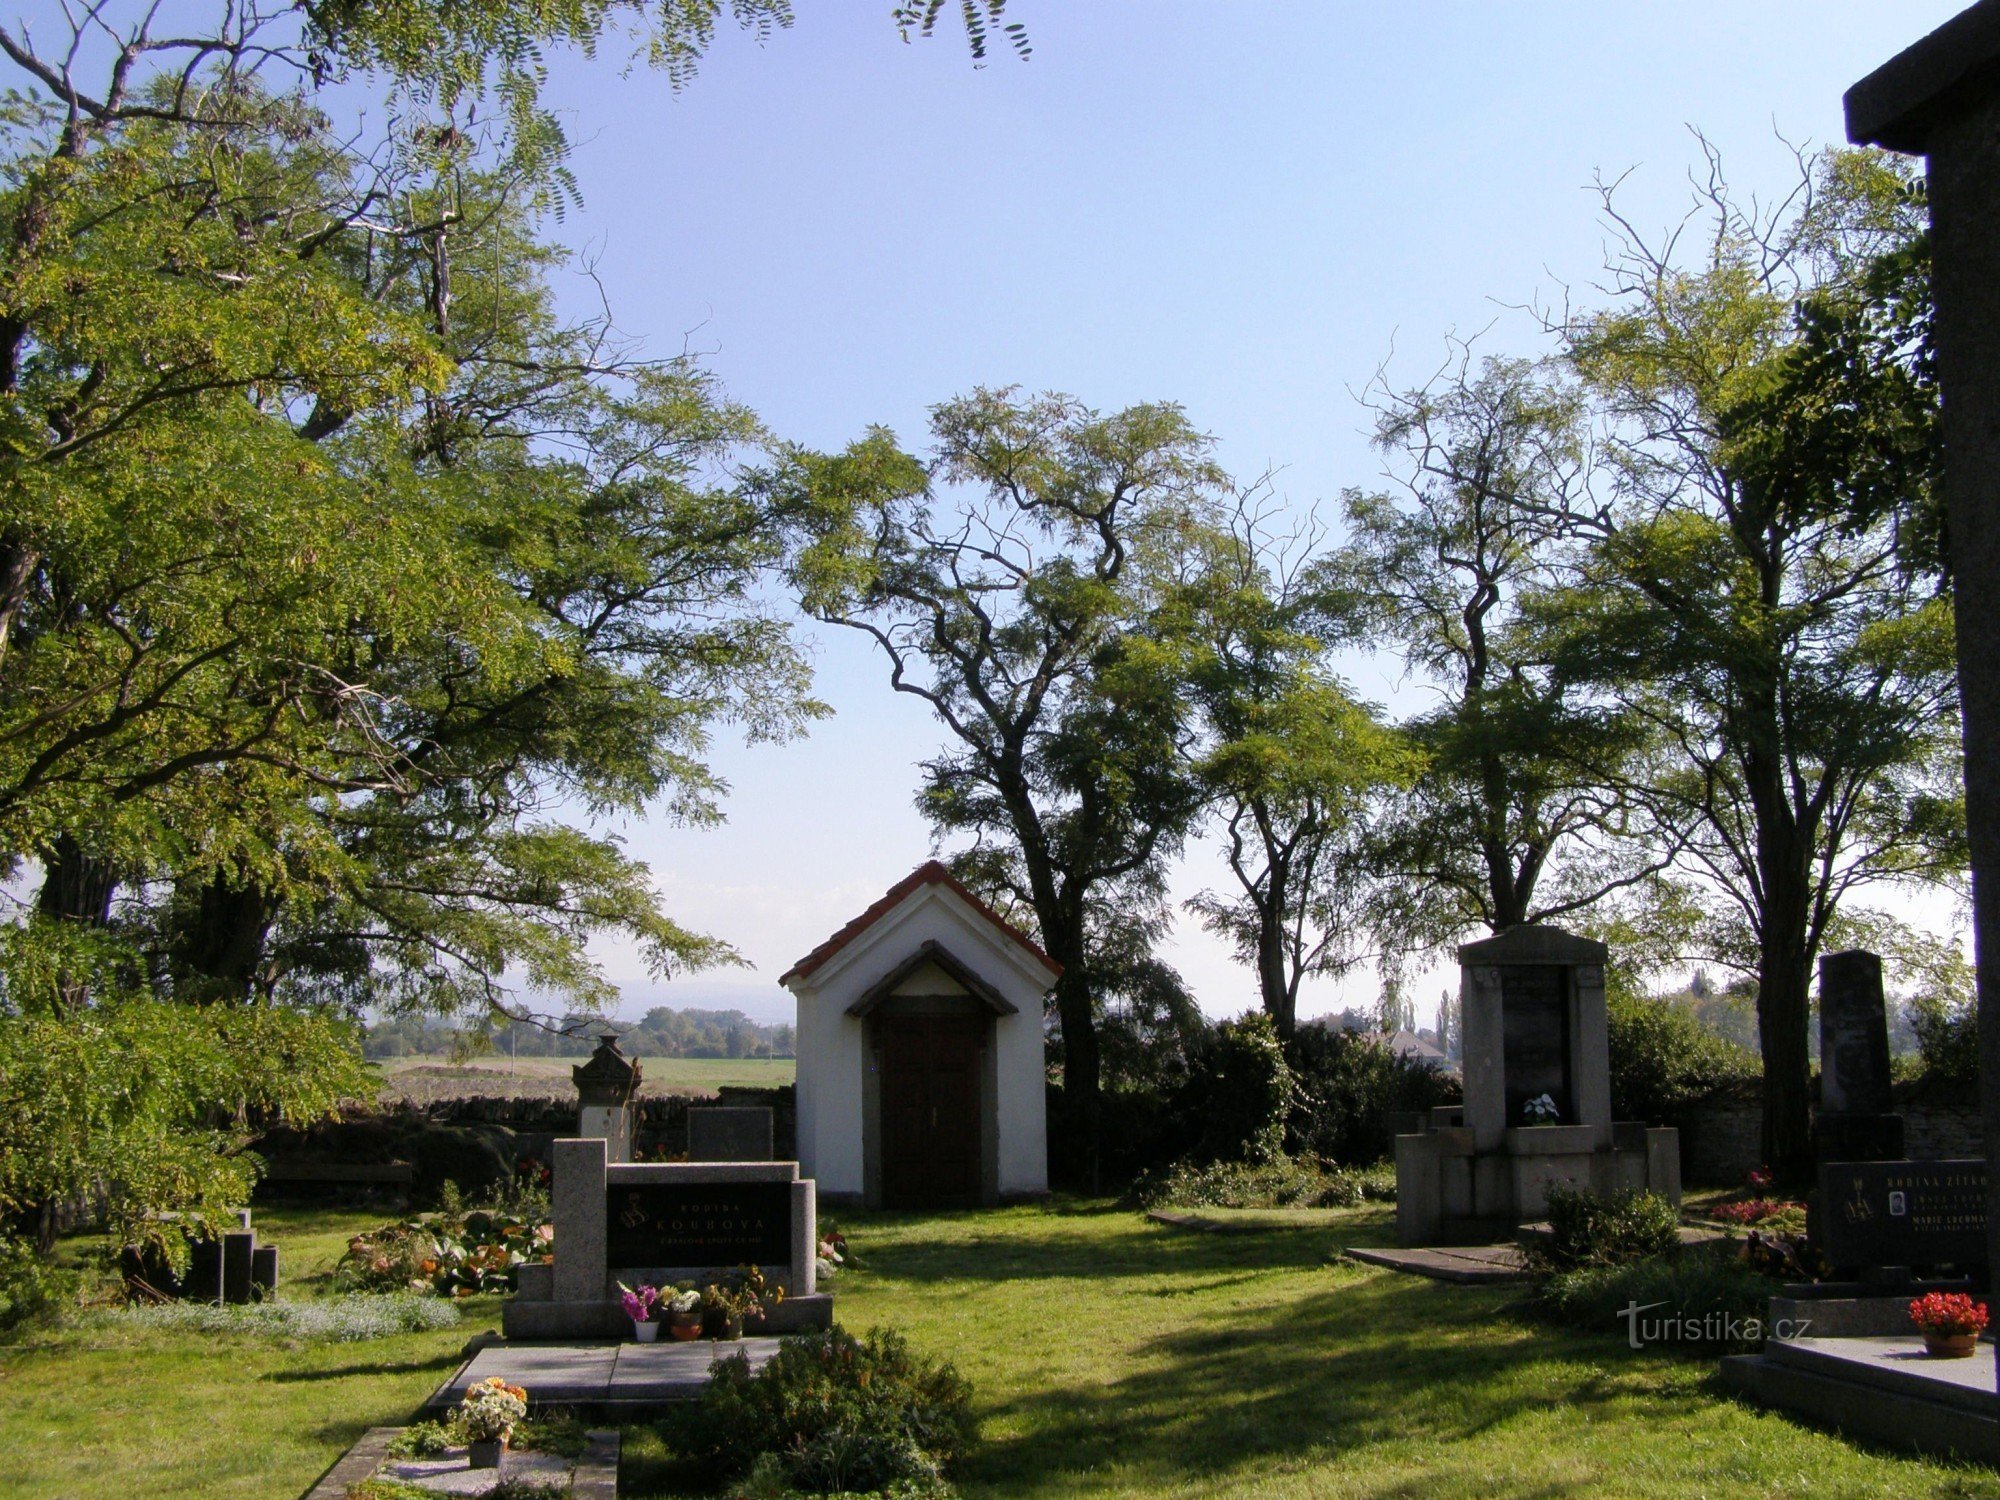 Кладбище возле Чески Мезиржичи